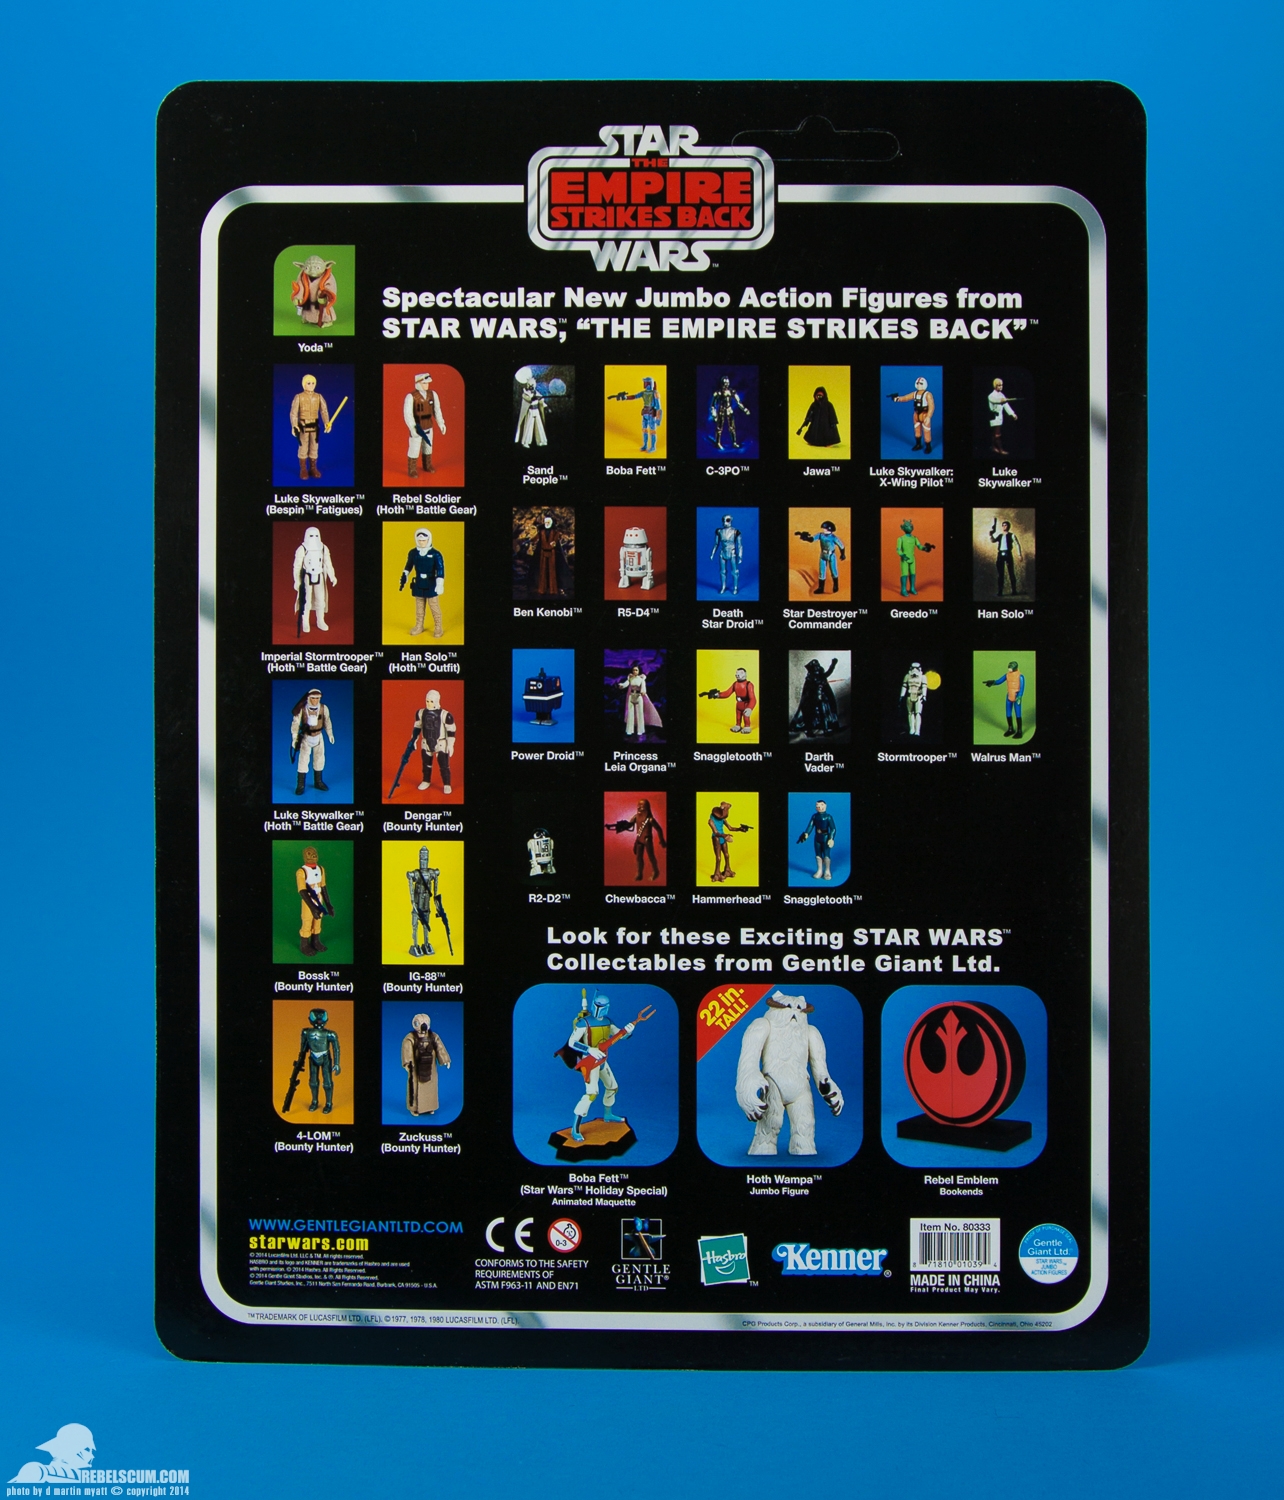 Luke-Skywalker-Hoth-Battle-Gear-Gentle-Giant-Ltd-Jumbo-Kenner-016.jpg